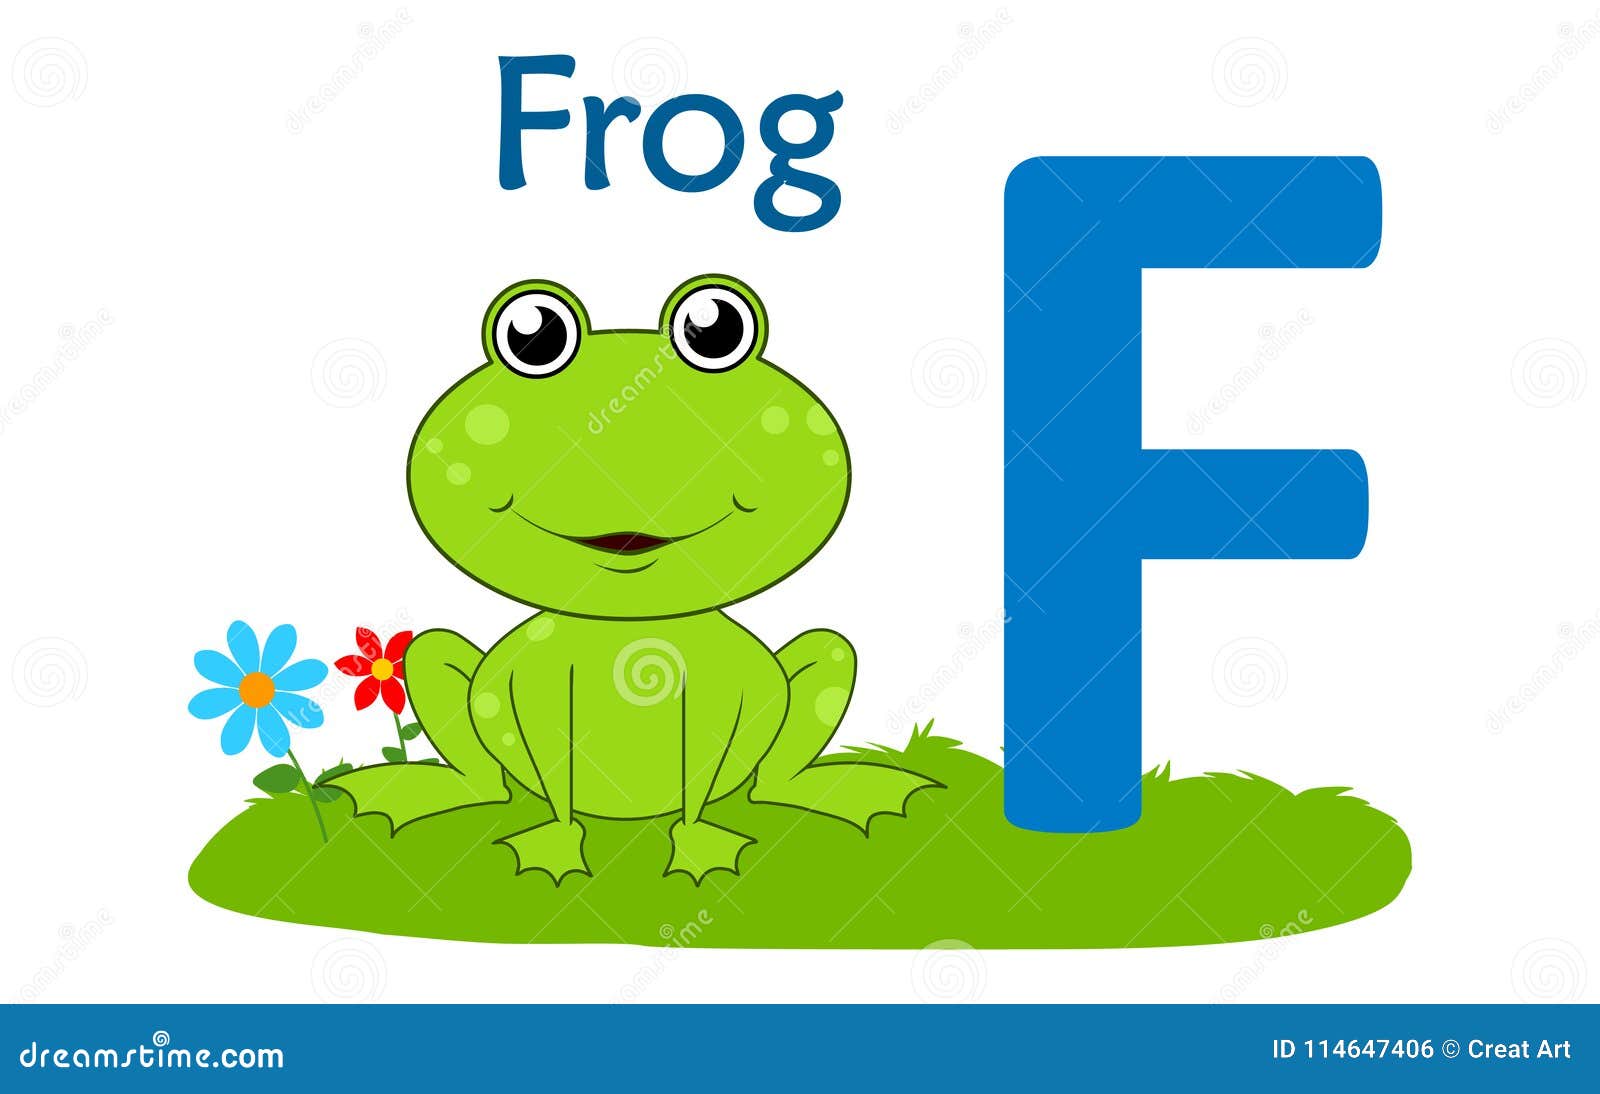 Английские слова лягушка. Английская буква f. Рисунок на английскую букву f. Буква f на английском для детей. Буква f иллюстрация.